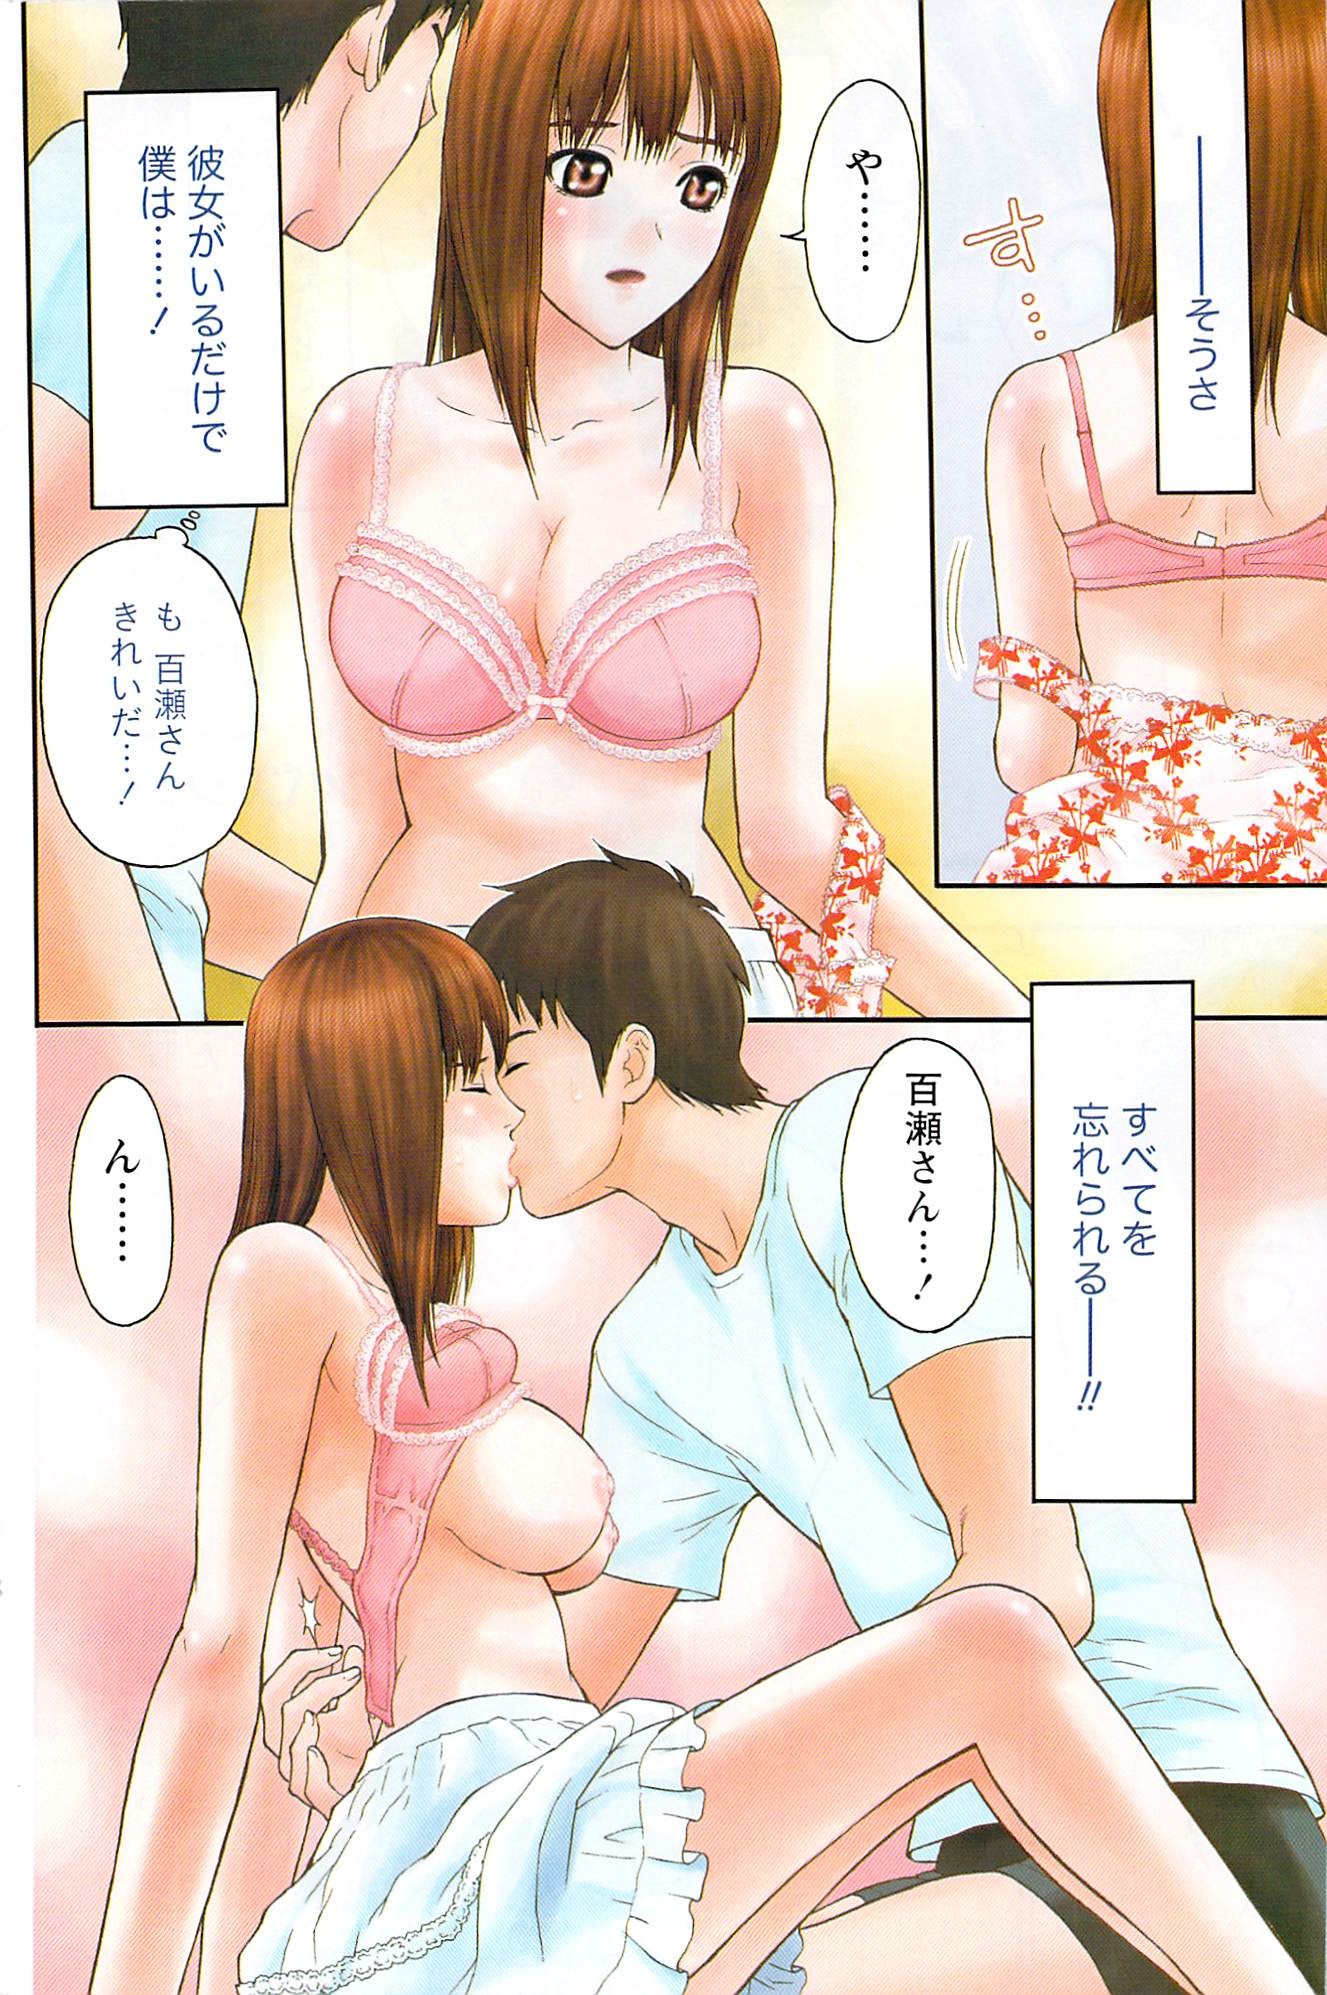 Akabane and Kimi-chan hentai manga picture 139